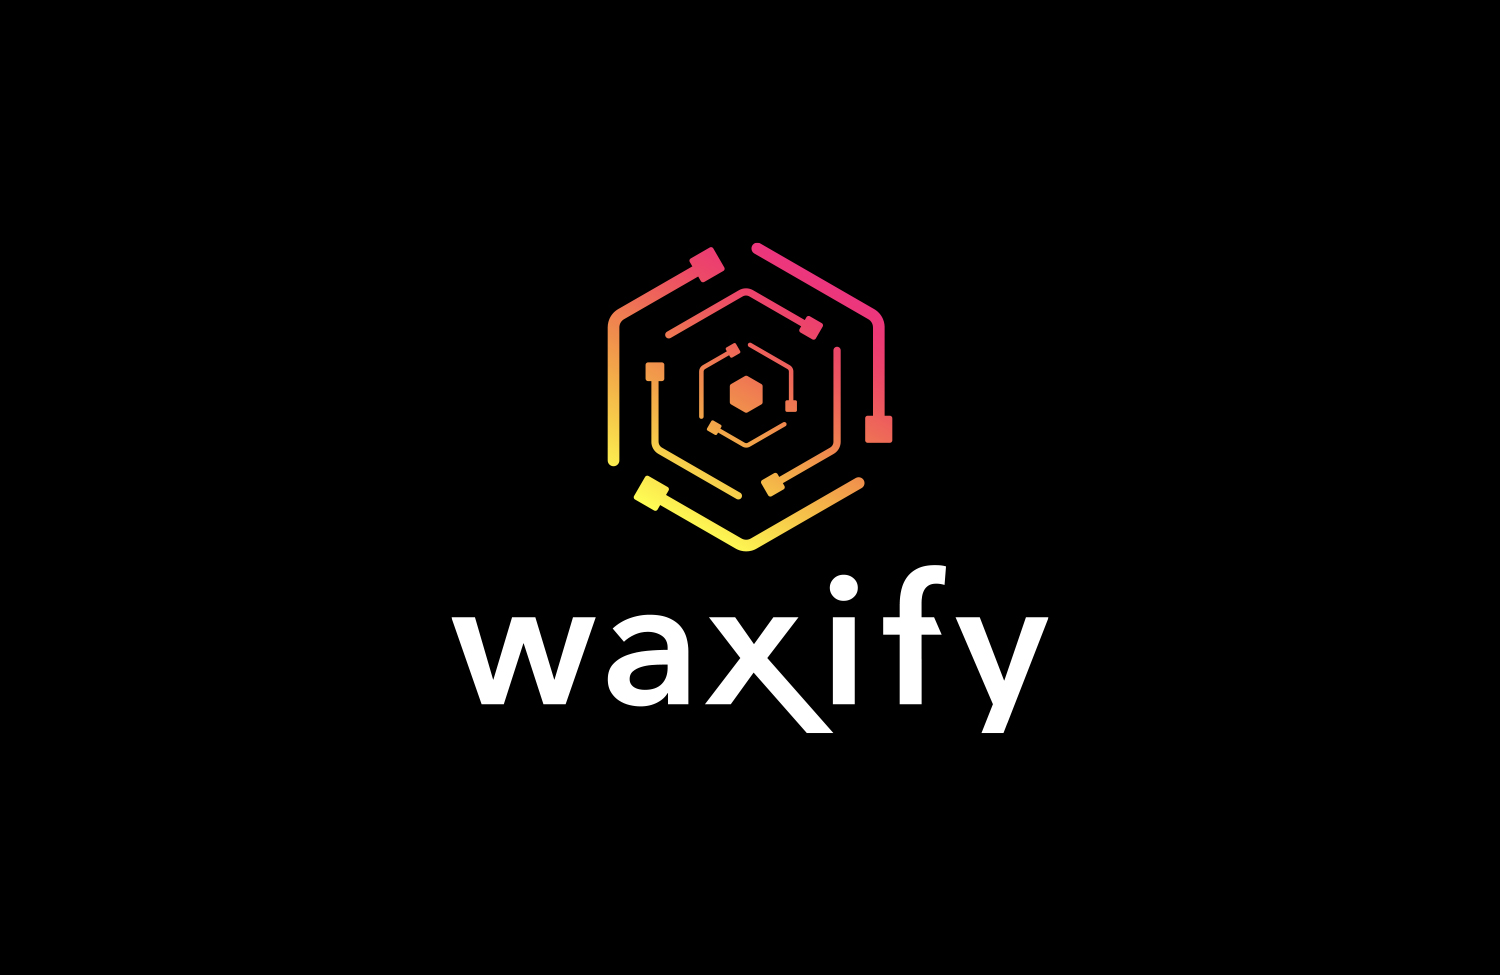 Waxify